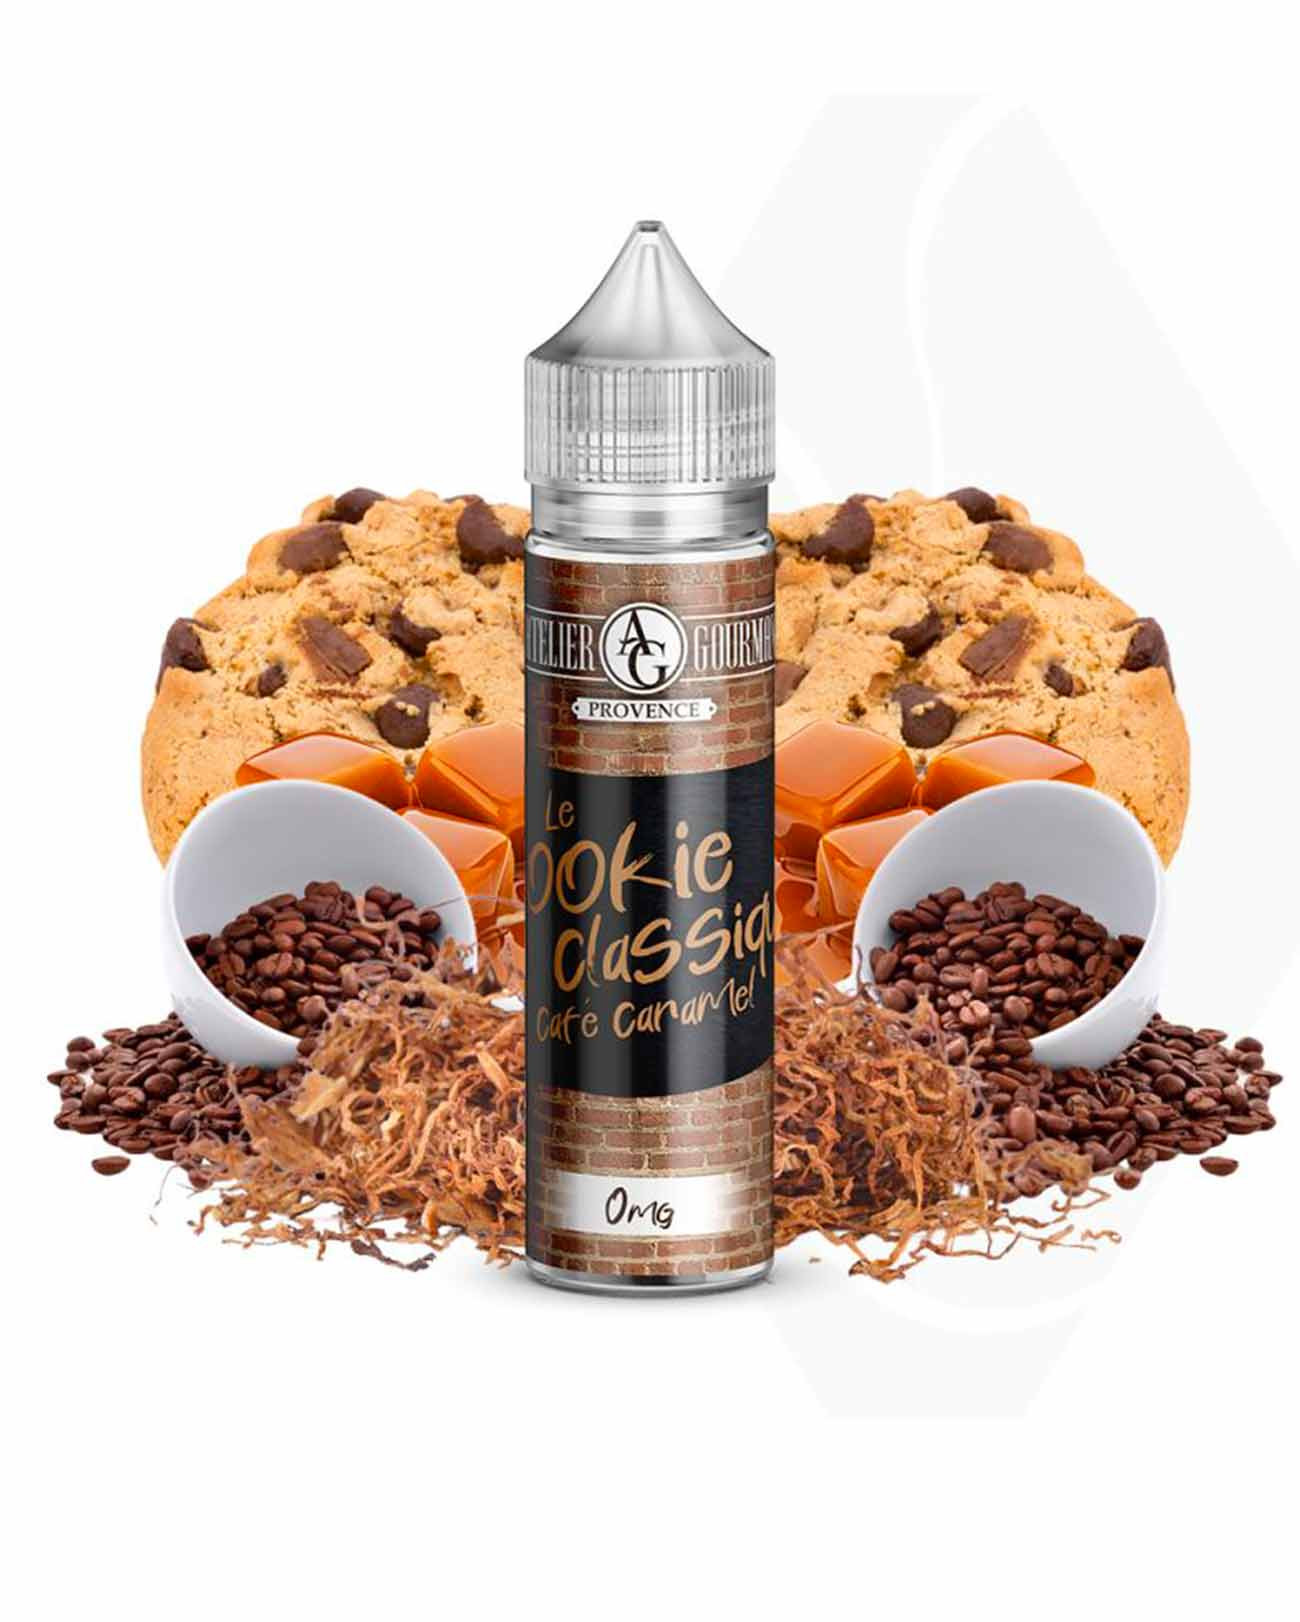 E-liquide de l'Atelier Gourmand Le Cookie Classique en grand format saveurs cookie café caramel